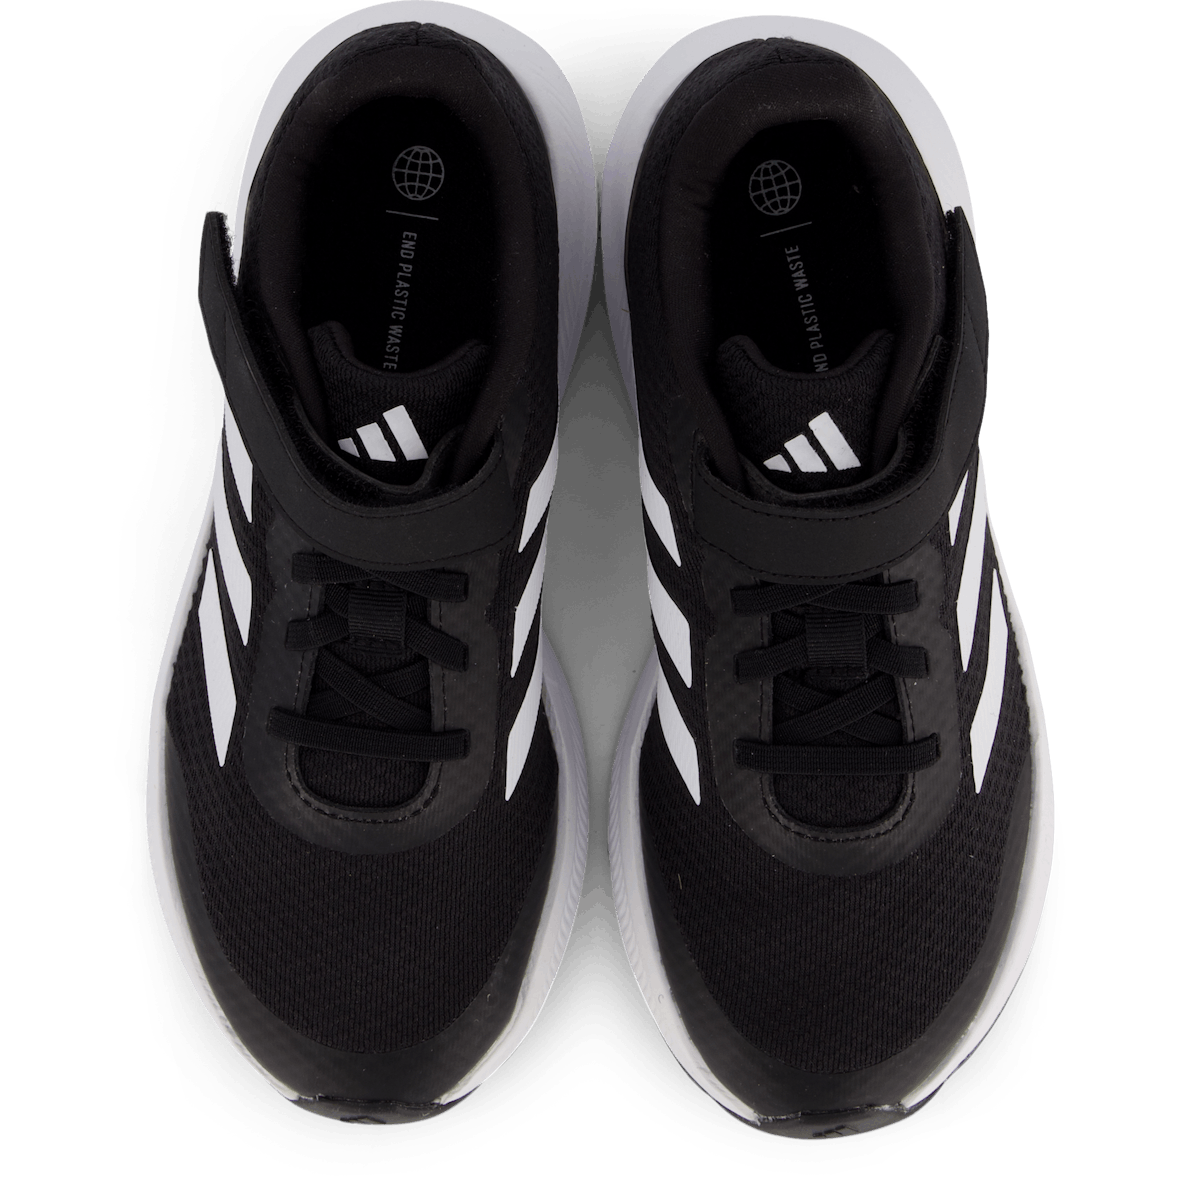 RunFalcon 3.0 Elastic Lace Top Strap Shoes Core Black / Cloud White / Core Black